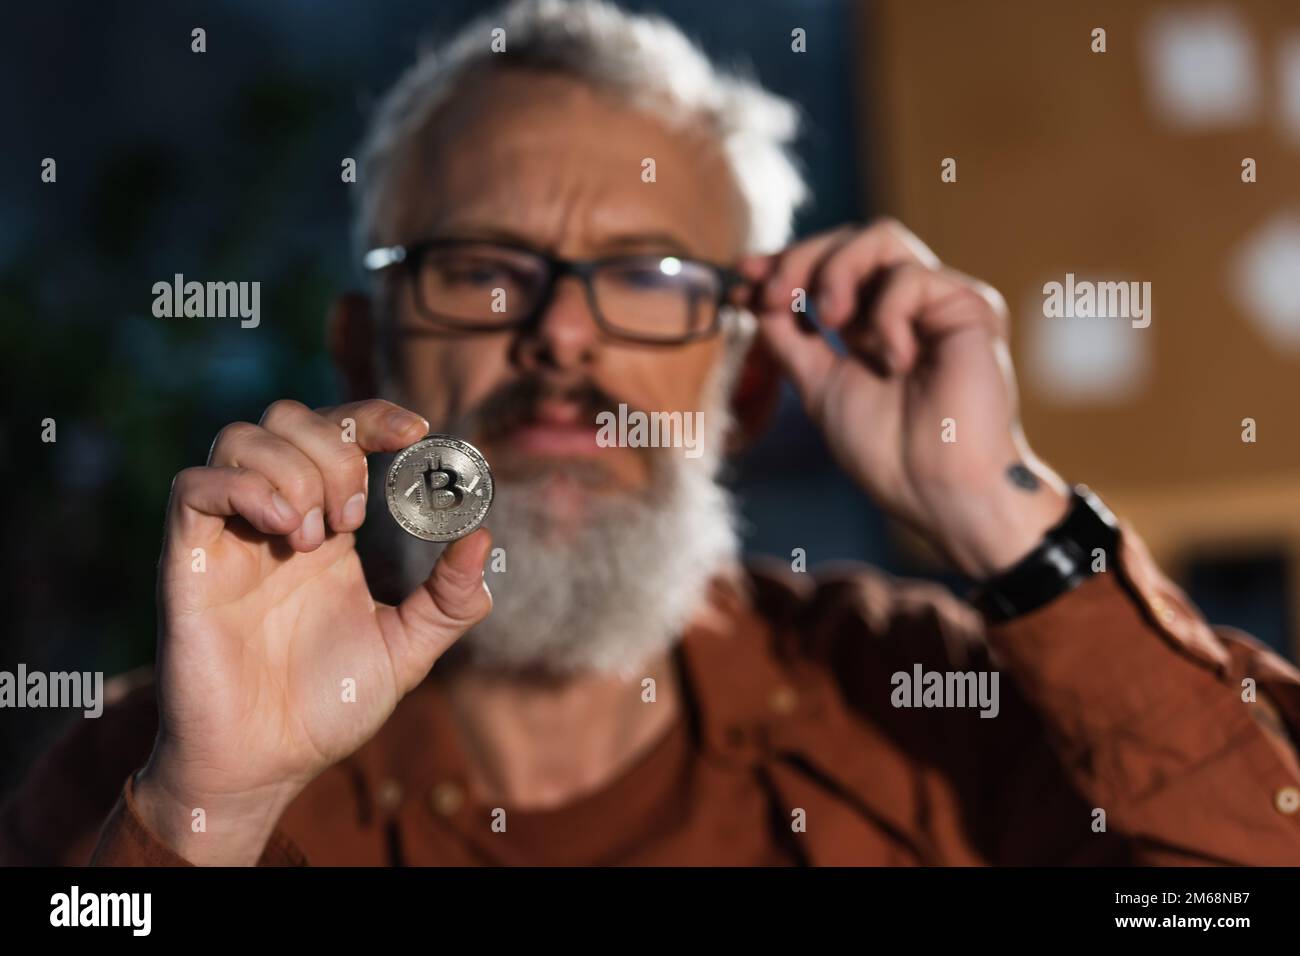 KIEW, UKRAINE - 17. NOVEMBER 2022: Unscharfer, bärtiger Geschäftsmann, der die Brille anpasst, während er Silberbitmünze in der Hand hält Stockfoto